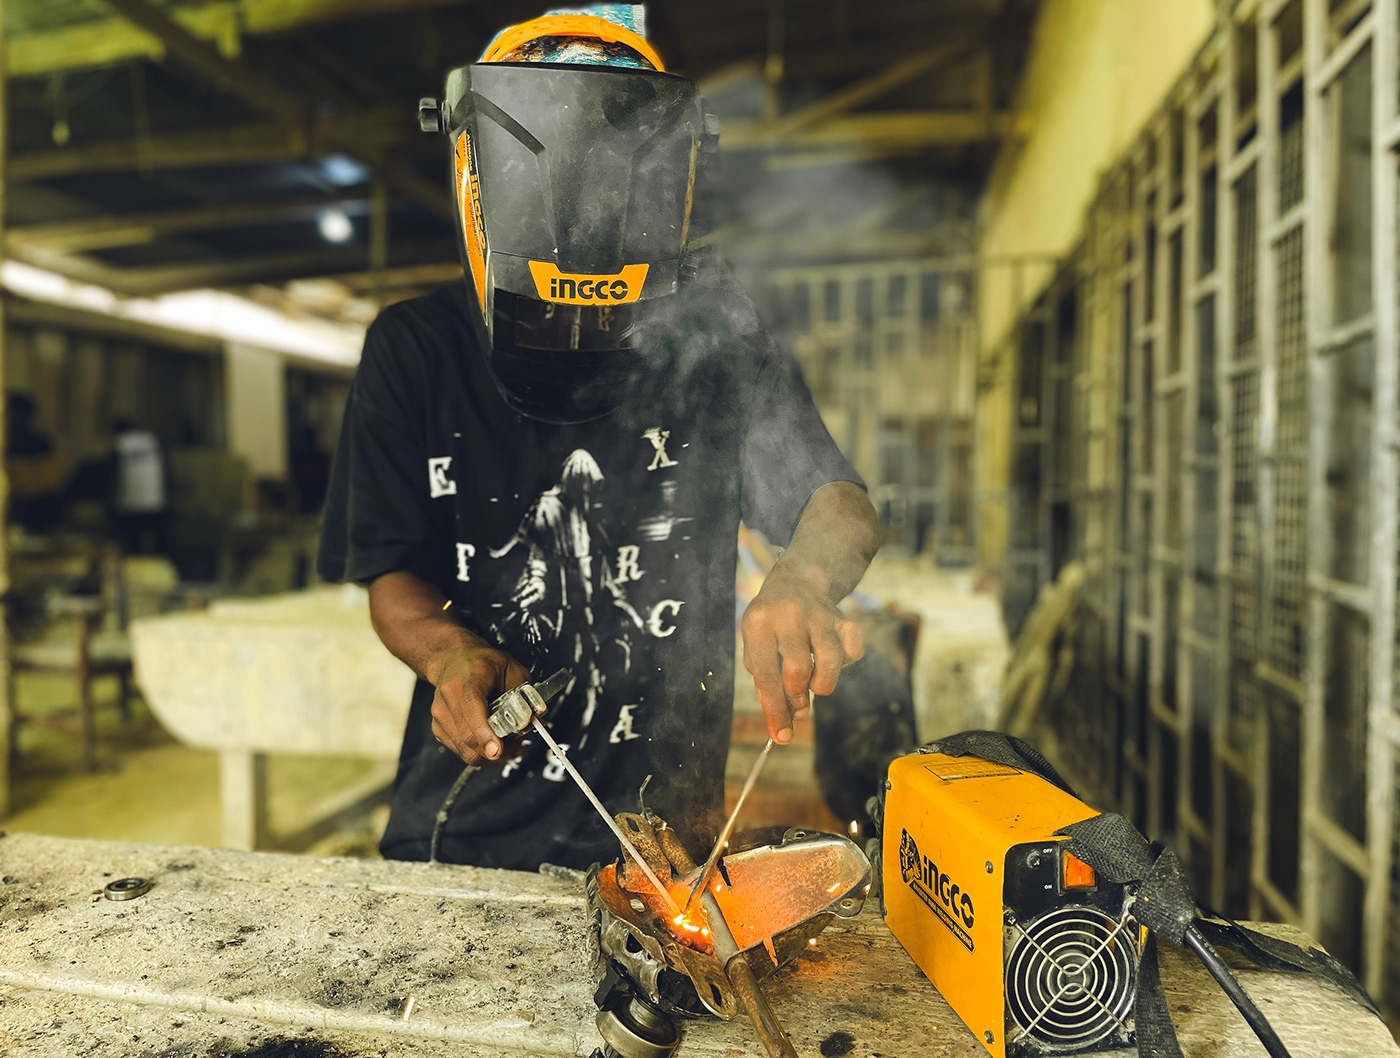 welding Welding Art Workers photo documentary iPhone photography Ghana Helmet